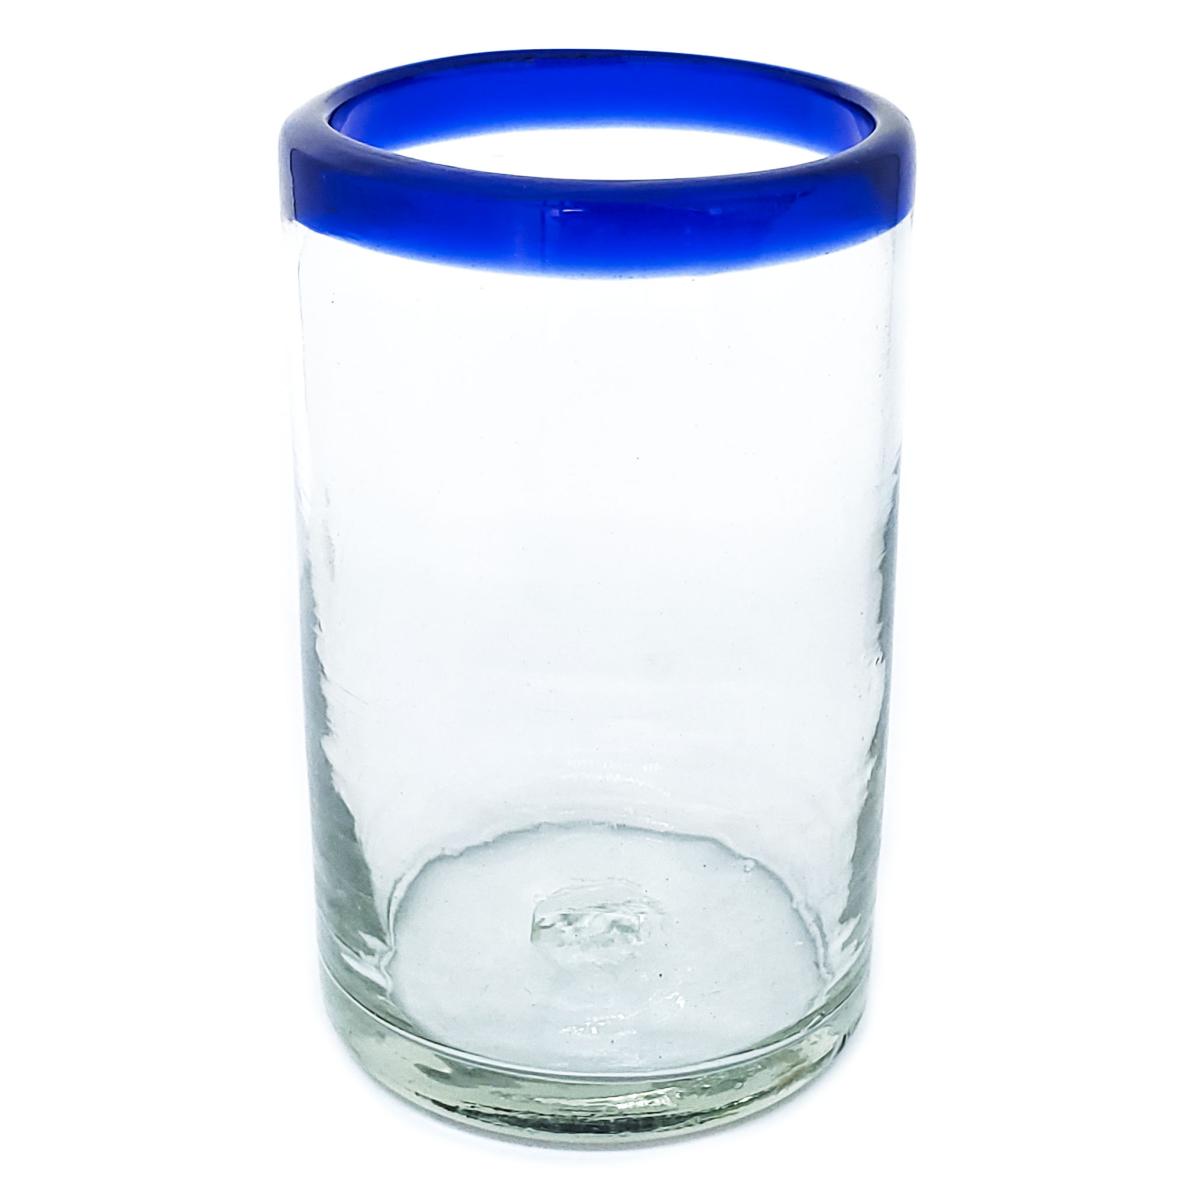 Ofertas / Juego de 6 vasos grandes con borde azul cobalto / stos artesanales vasos le darn un toque clsico a su bebida favorita.